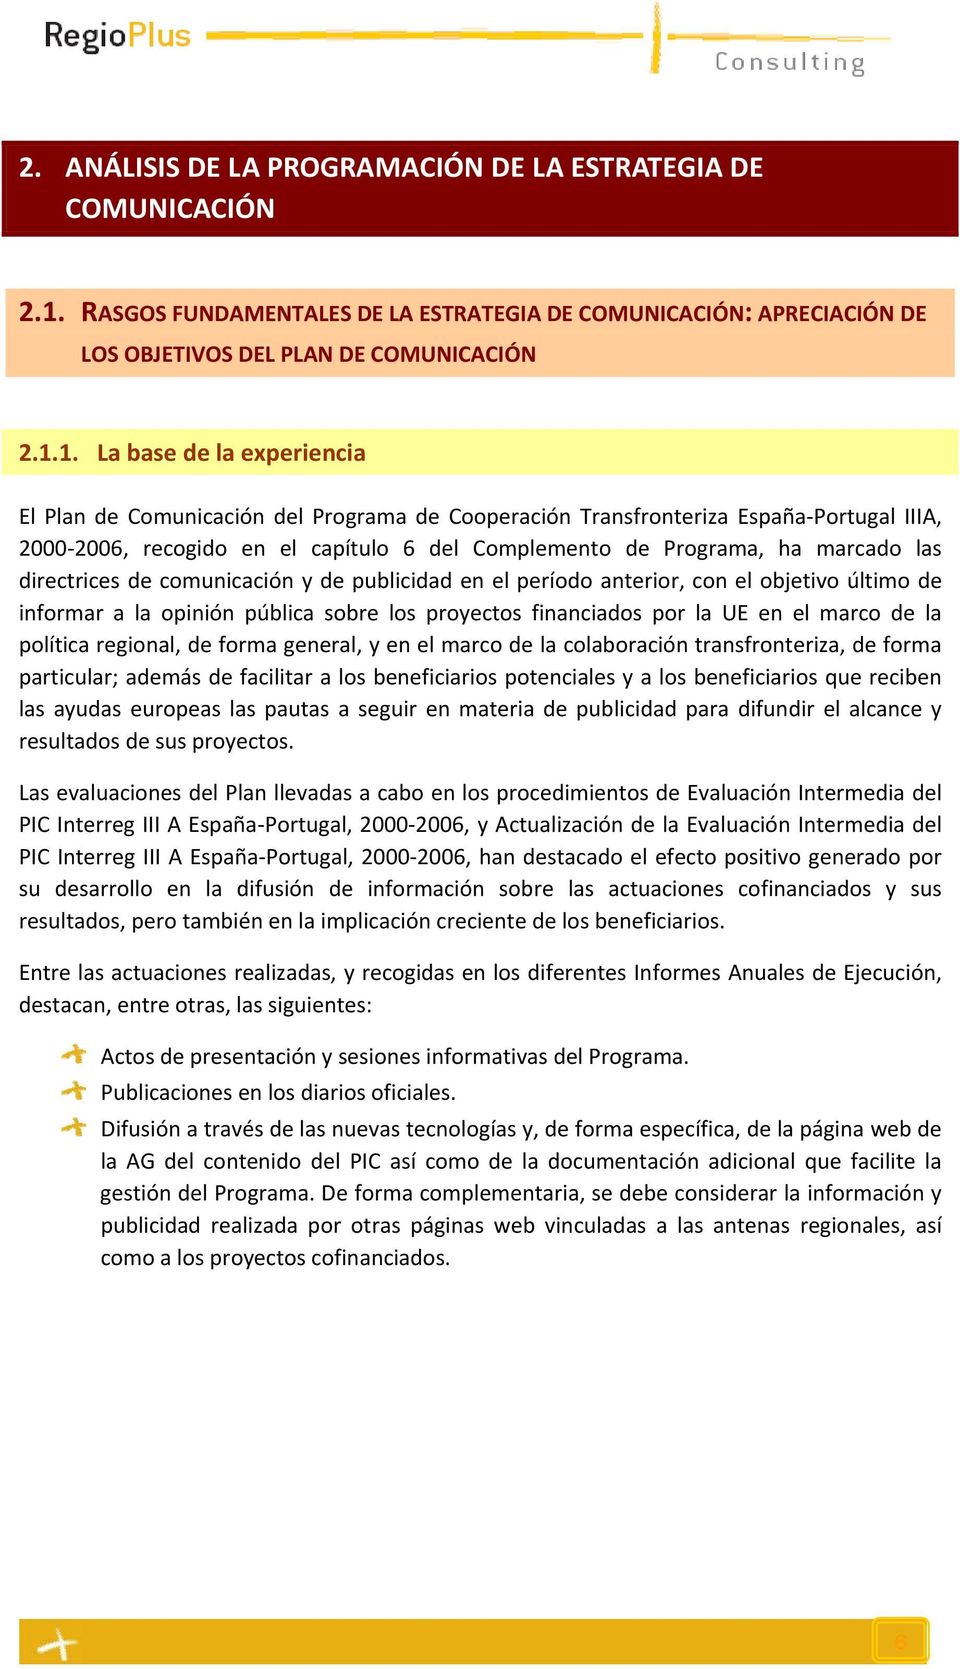 1. La base de la experiencia El Plan de Comunicación del Programa de Cooperación Transfronteriza España Portugal IIIA, 2000 2006, recogido en el capítulo 6 del Complemento de Programa, ha marcado las